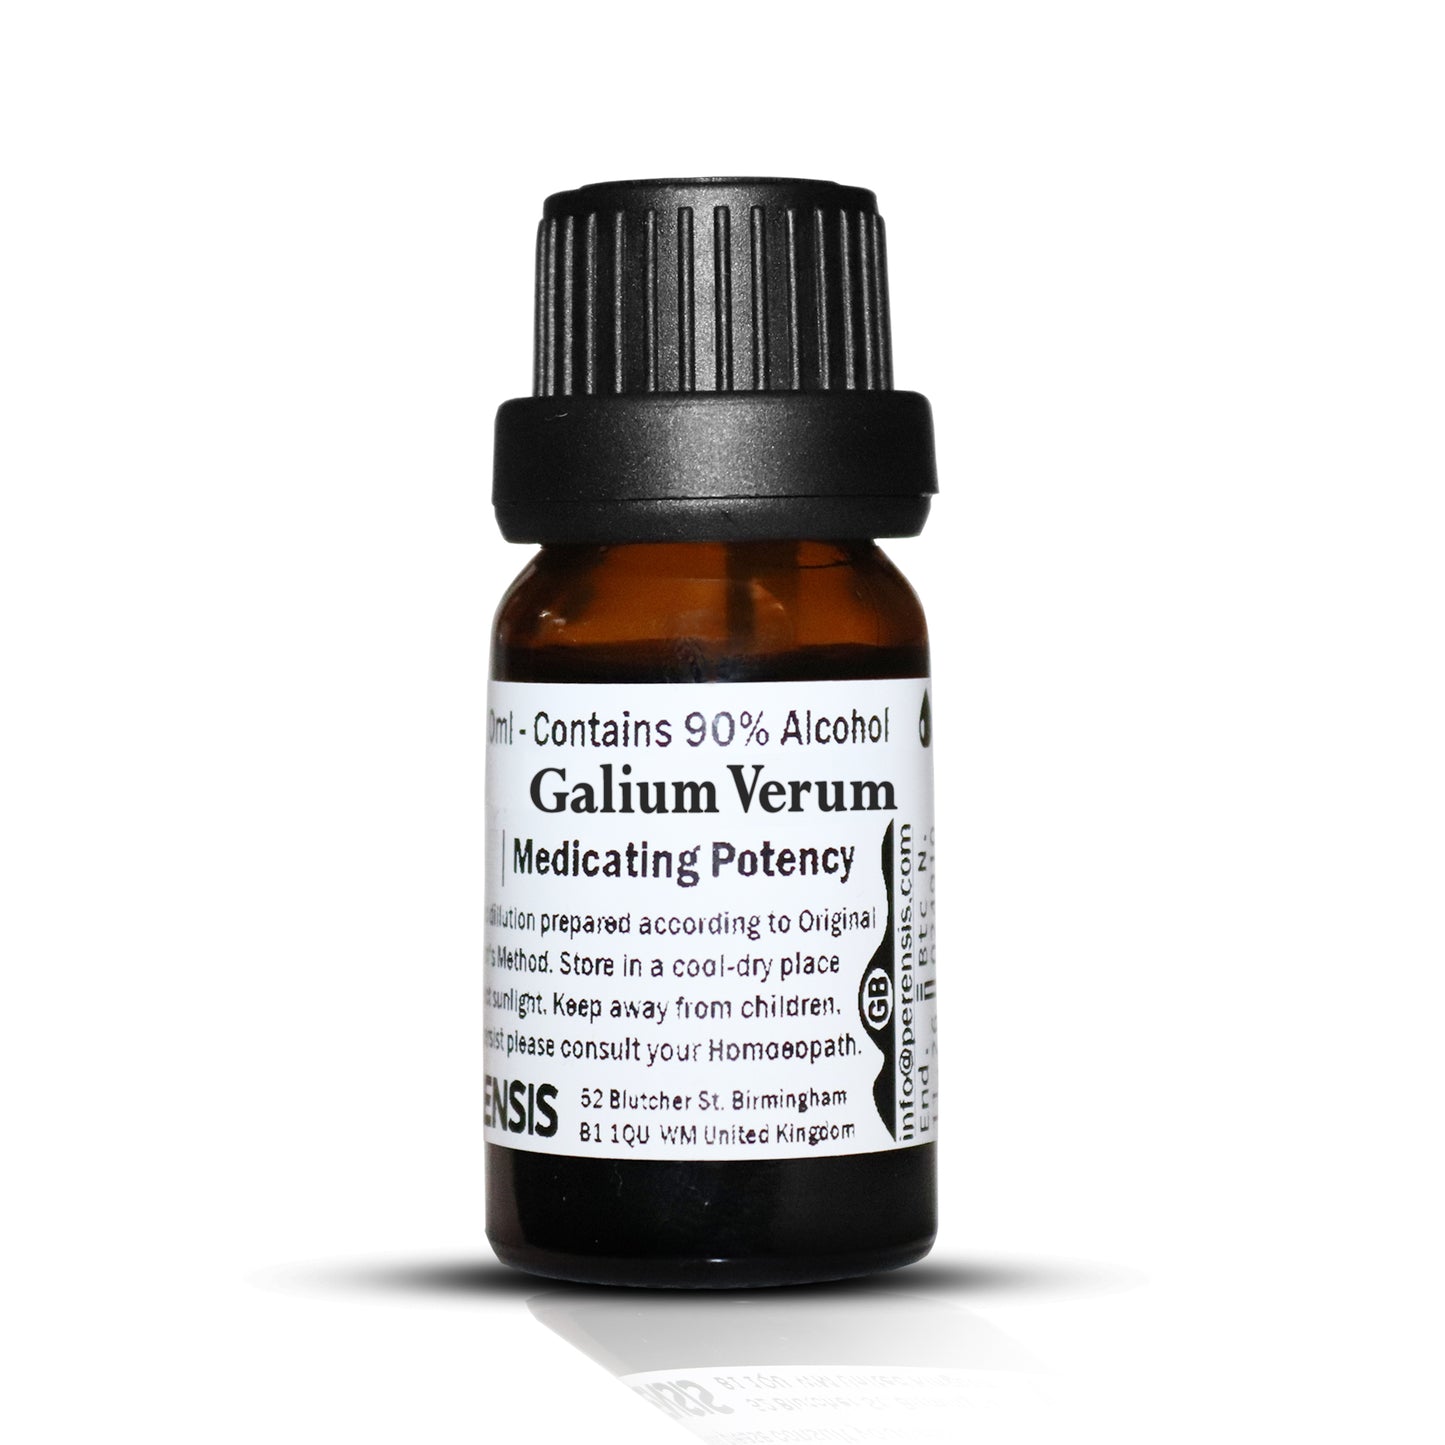 Galium Verum